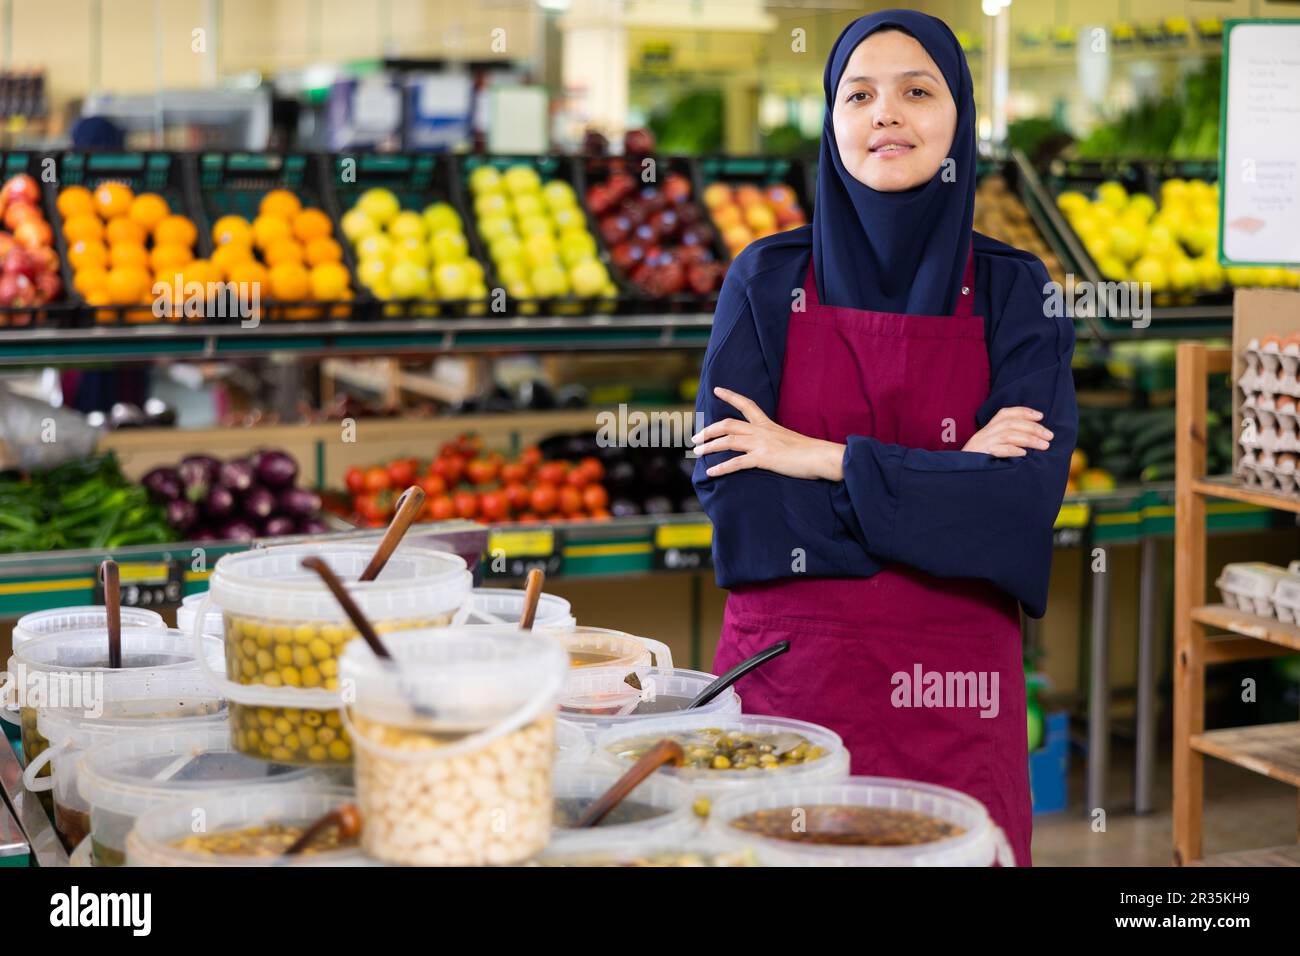 Nel negozio di verdure accanto alle olive in salamoia per peso si trova donna venditore in hijab e sorride affettuosamente Foto Stock